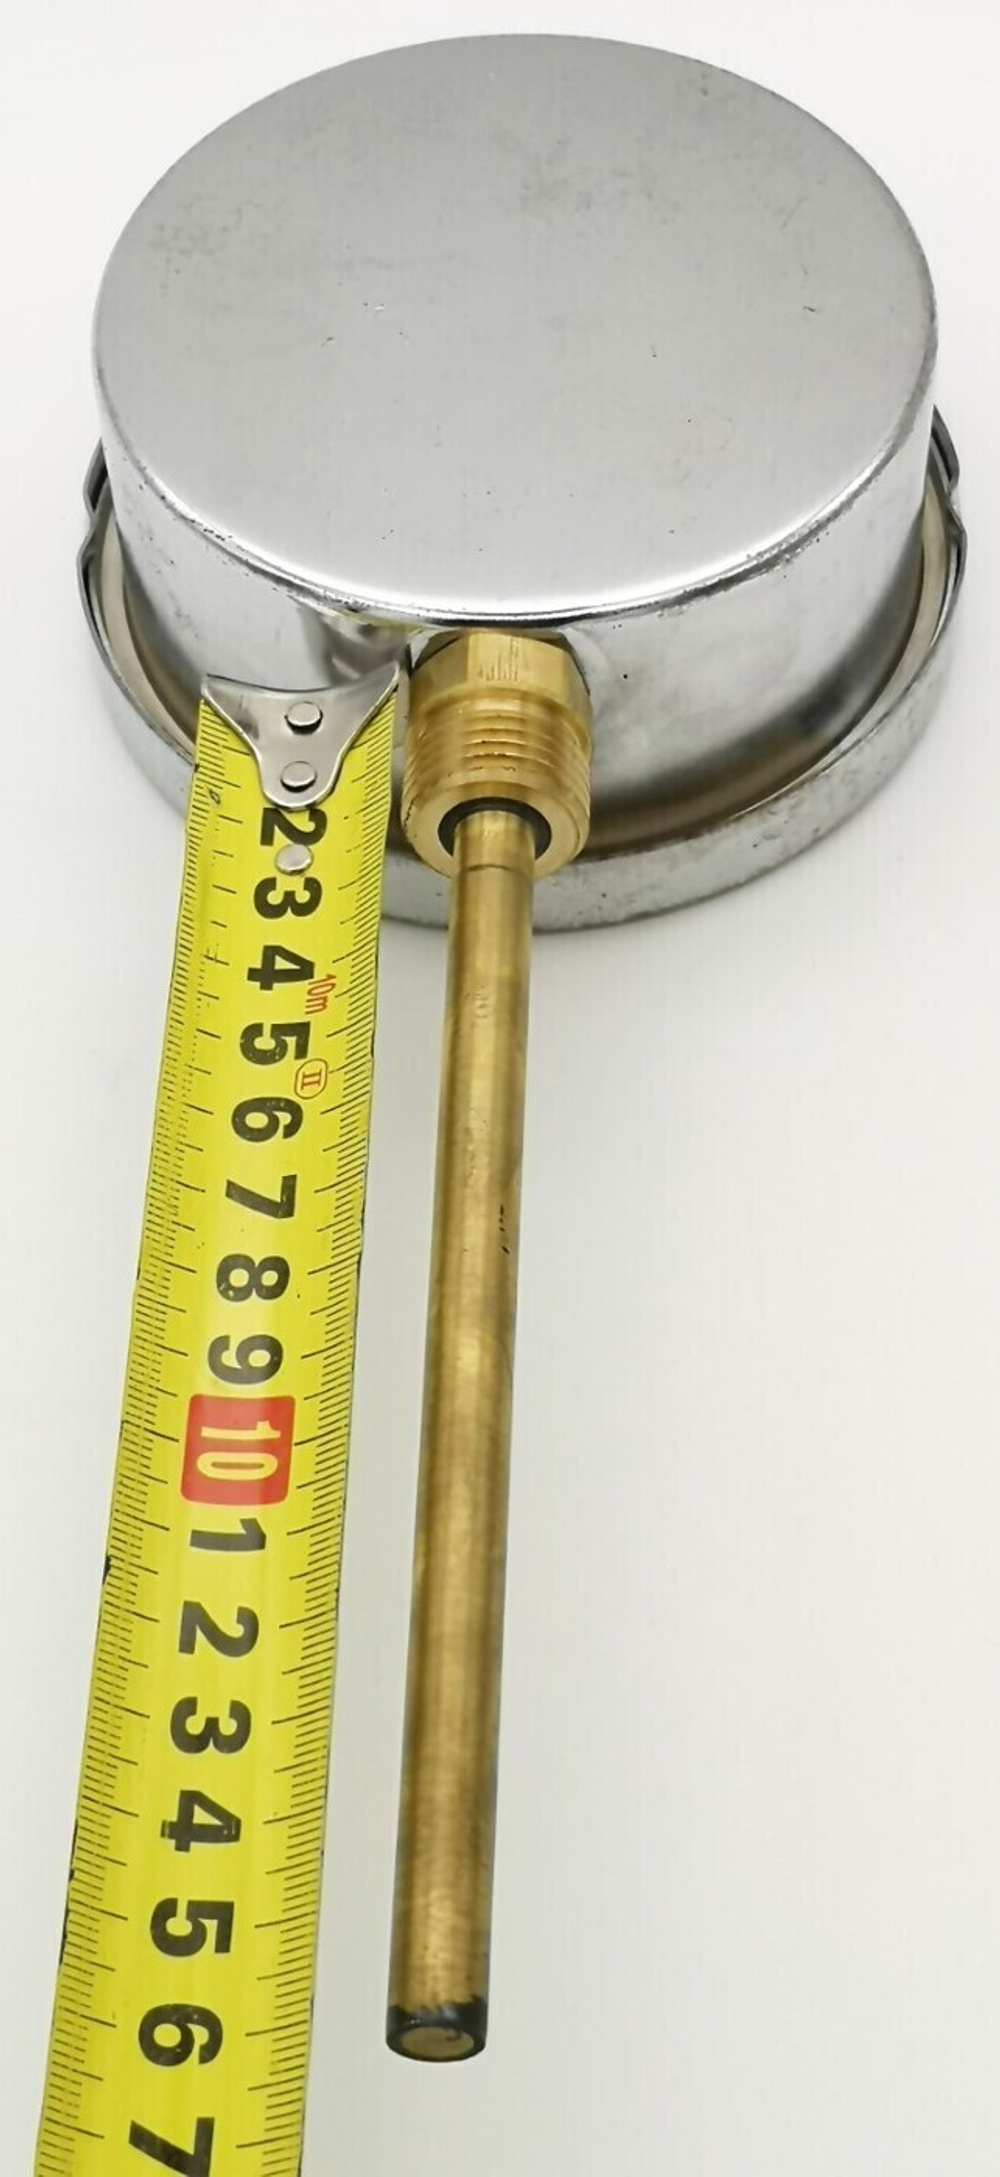 Термометр биметаллический БТ-52.211 (0+160) G1/2, 150мм, 1.5 радиальный